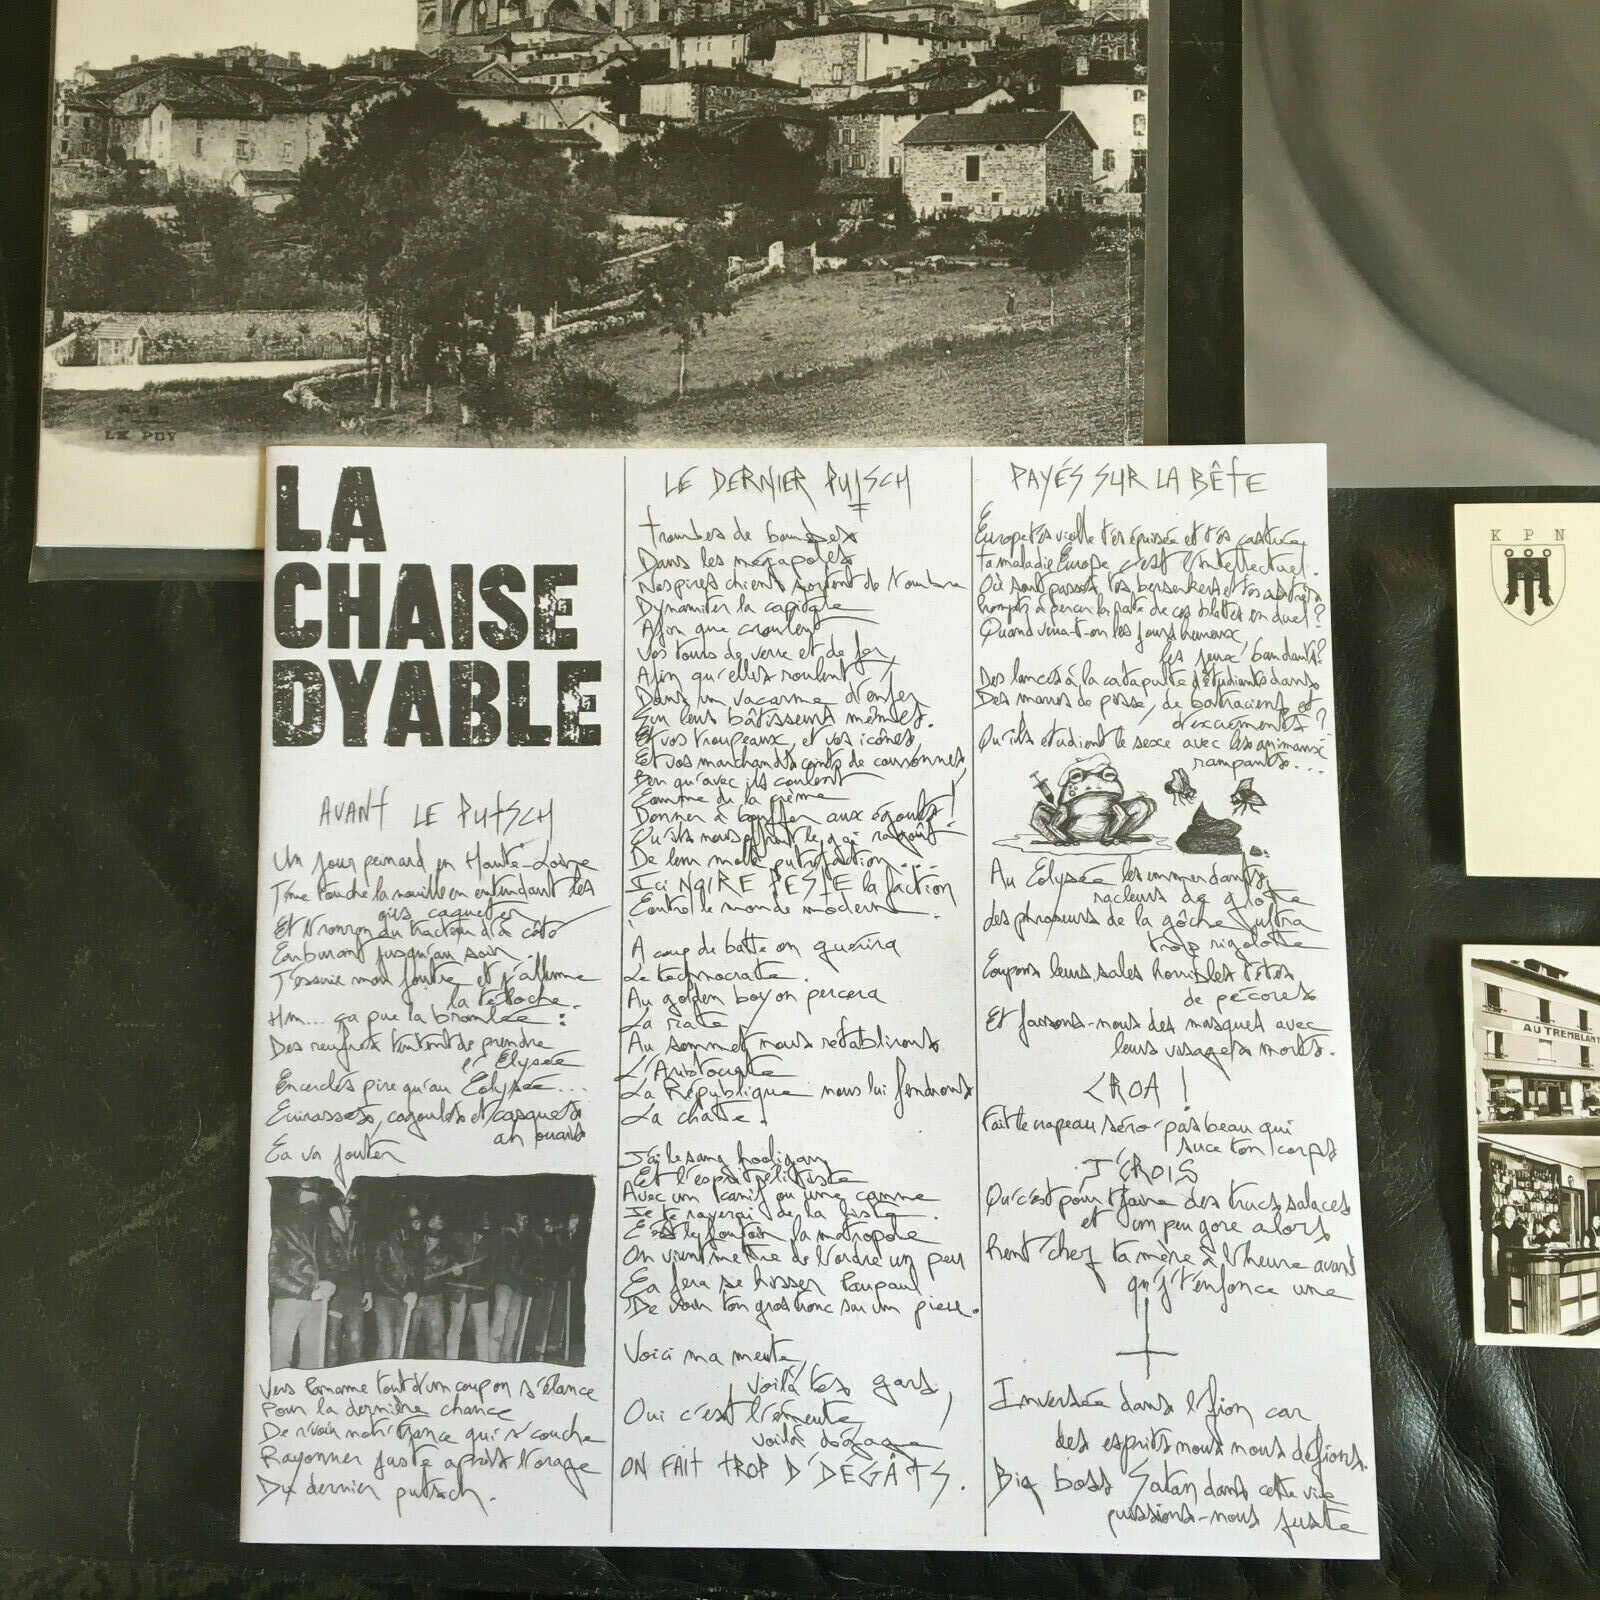 popsike.com - Peste Noire - La Chaise-Dyable Vinyl LP (Vothana